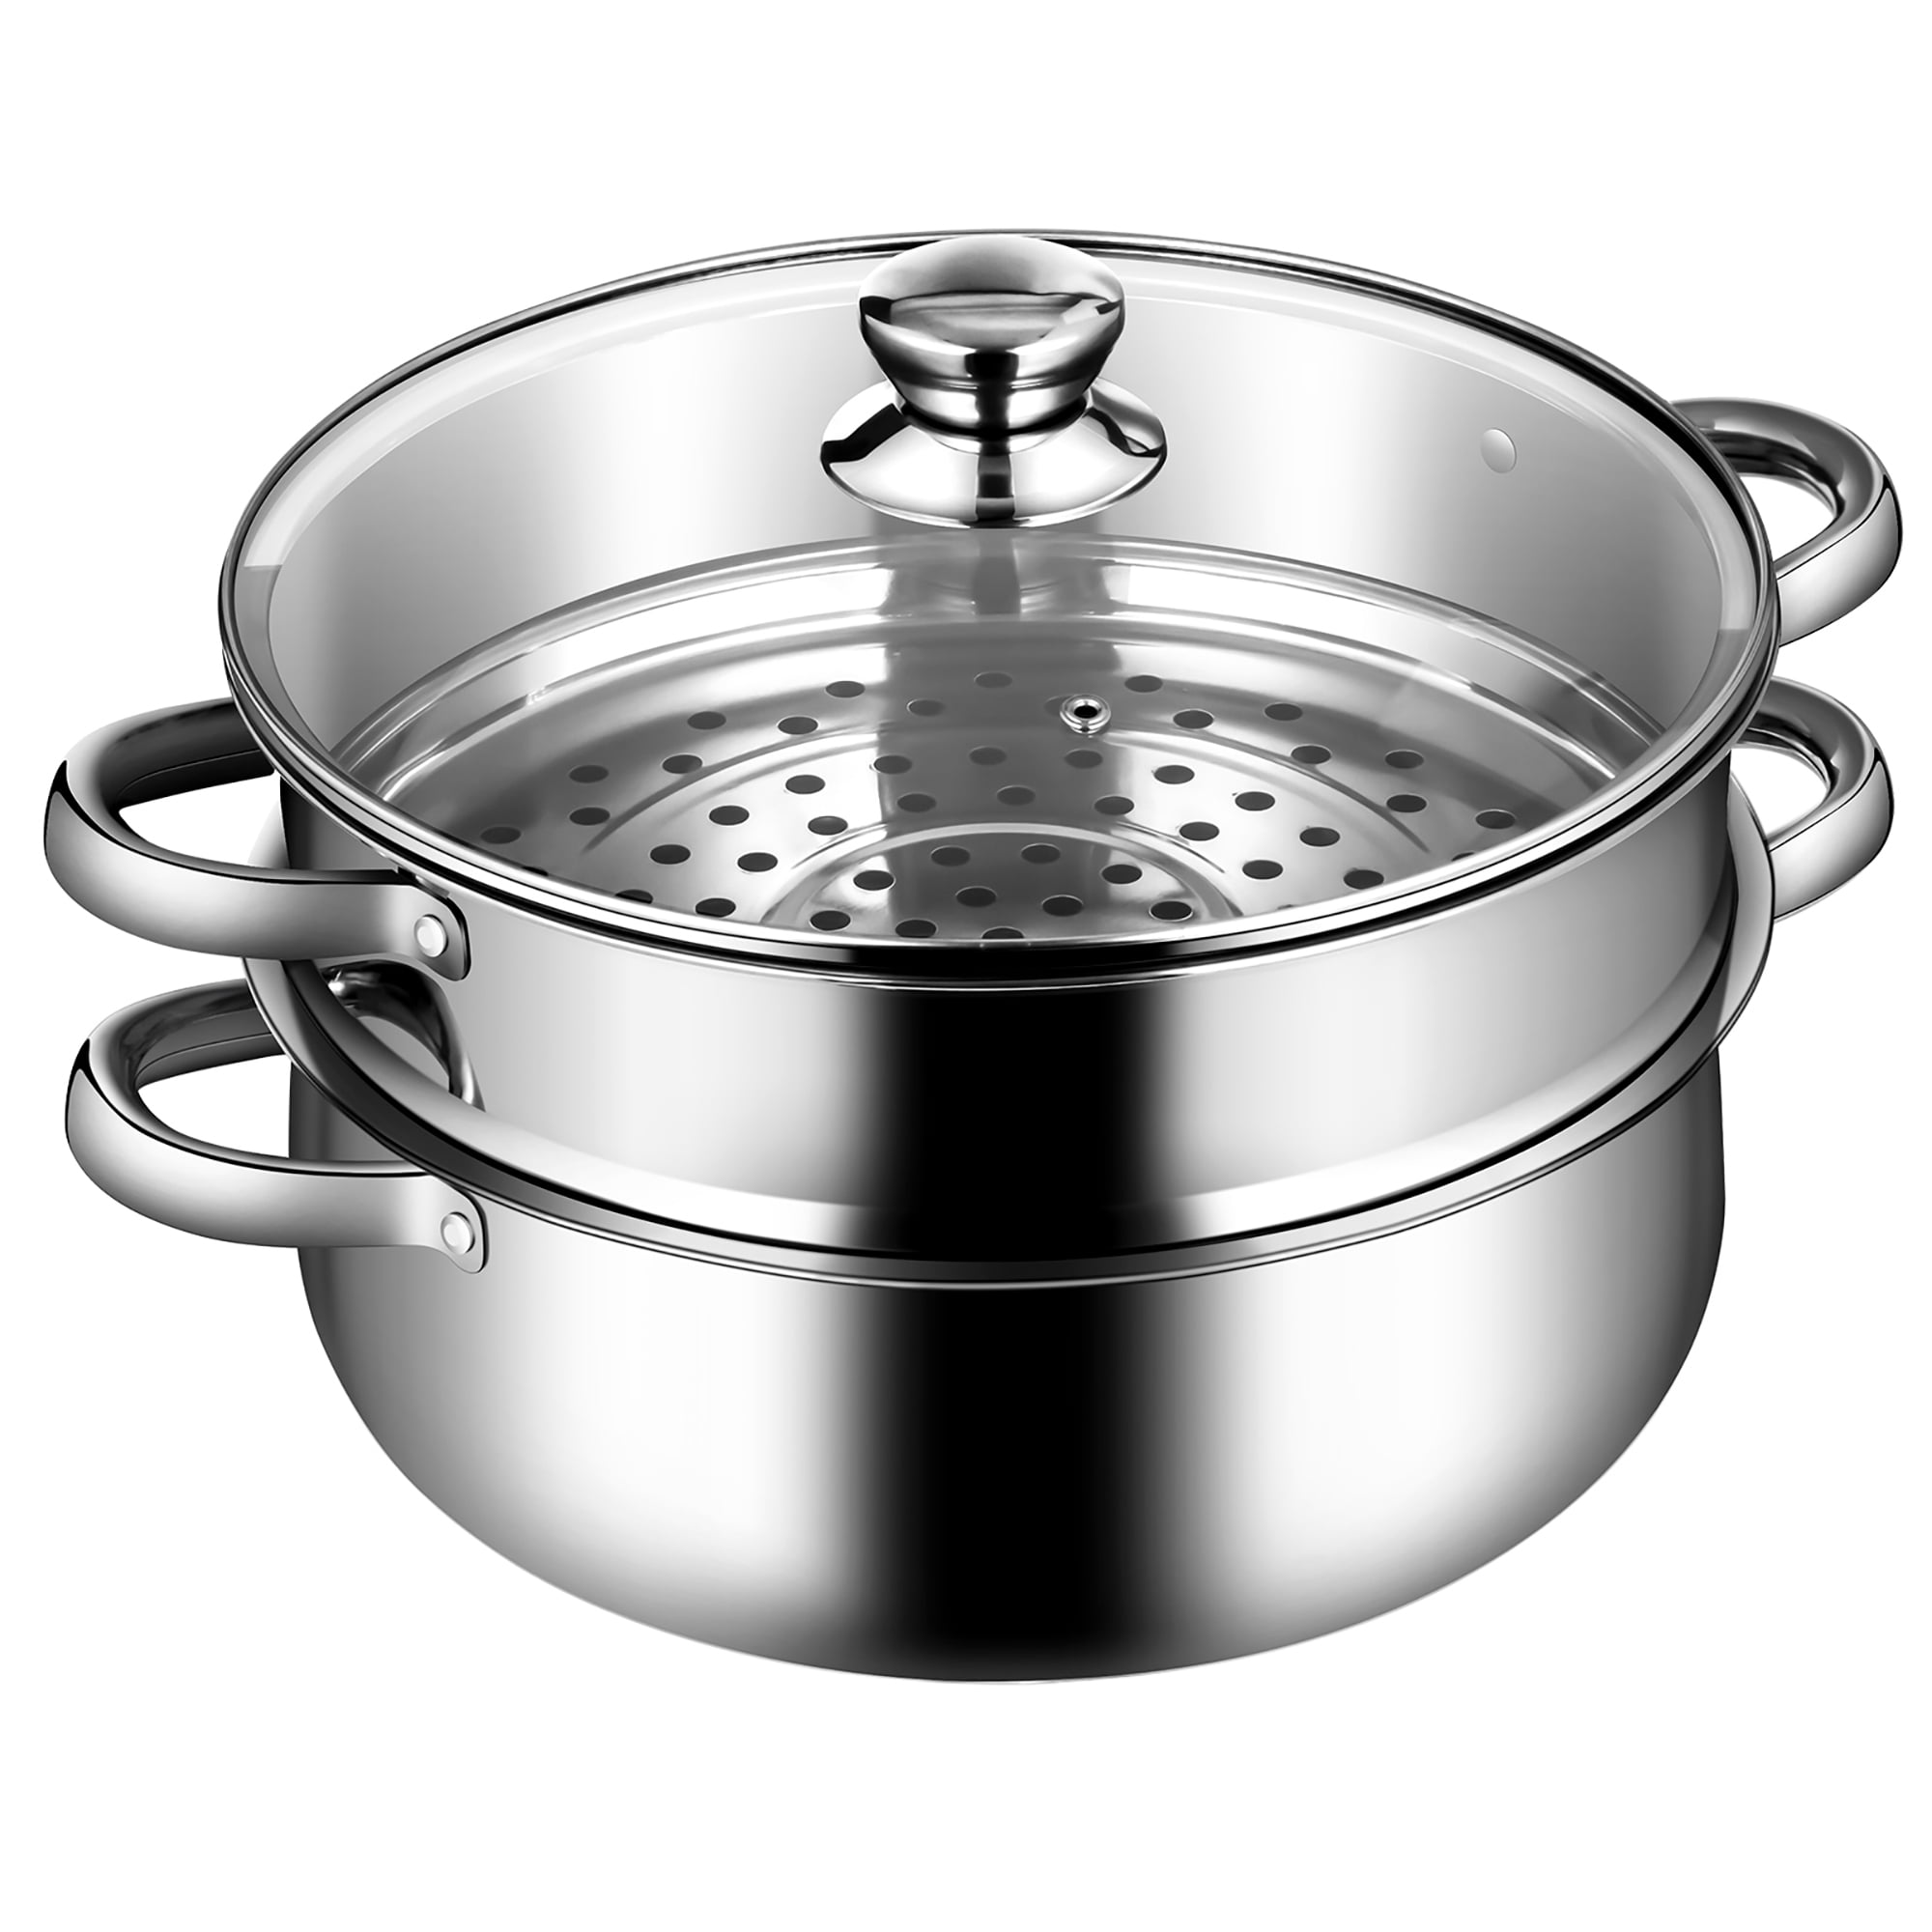 Steamer Pot Stainless Steel 2 Tier - 28cm Steamer Pot w/Glass Lid Food Veg  Cooker Pot Cooking Pan Steaming Pot Dim Sum Cookware Steamer For Kitcken